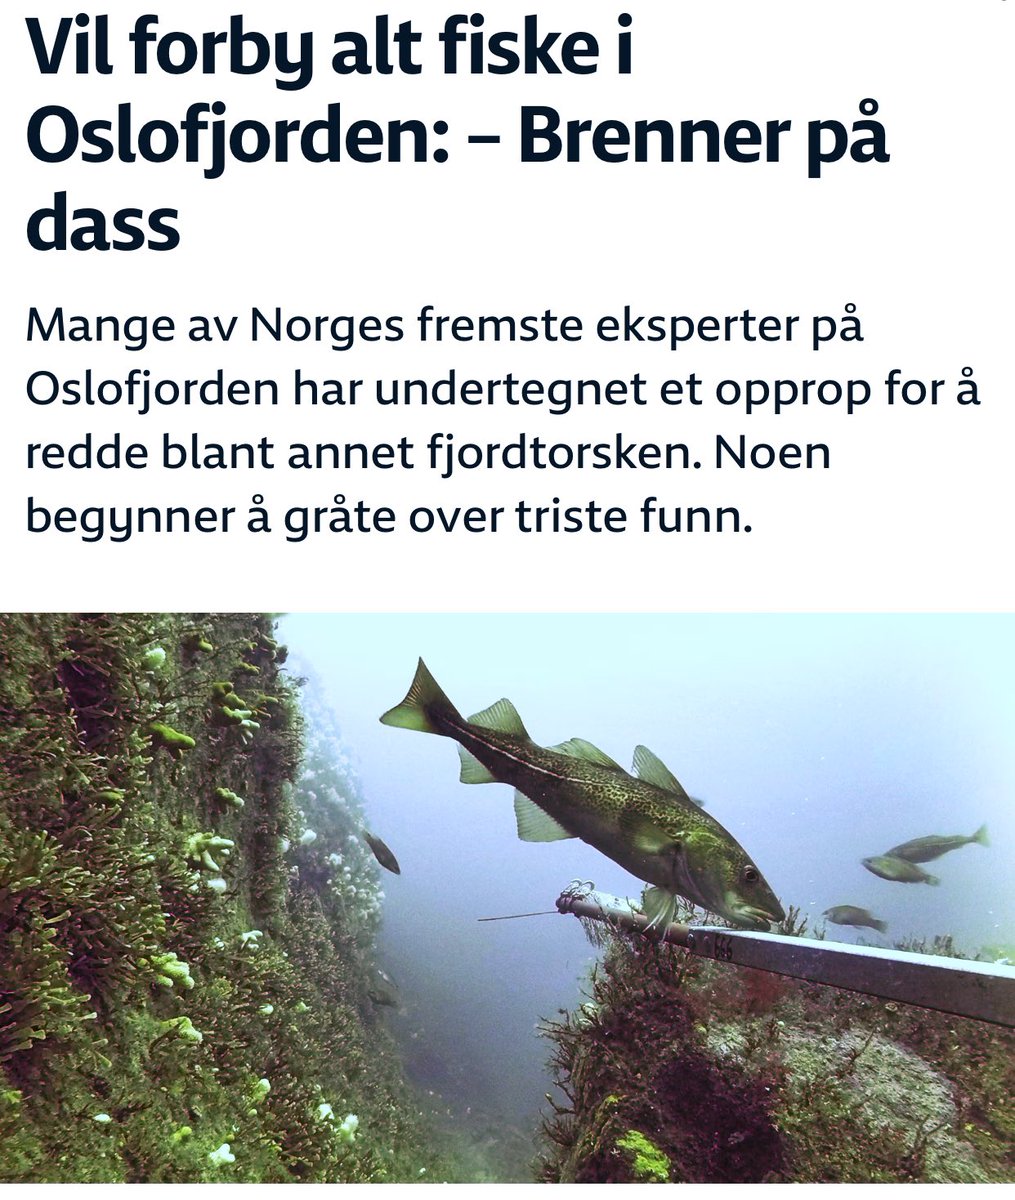 Kan det sies klarere «Det brenner på dass for fisken i Oslofjorden». Forskere med tydelig utålmodighet for livet i fjorden vår. Fiskeforbud burde være en smal sak å få på plass som et av flere tiltak @CecilieMyrseth @BjellandEriksen! #dax18 #debatten nrk.no/stor-oslo/vil-…